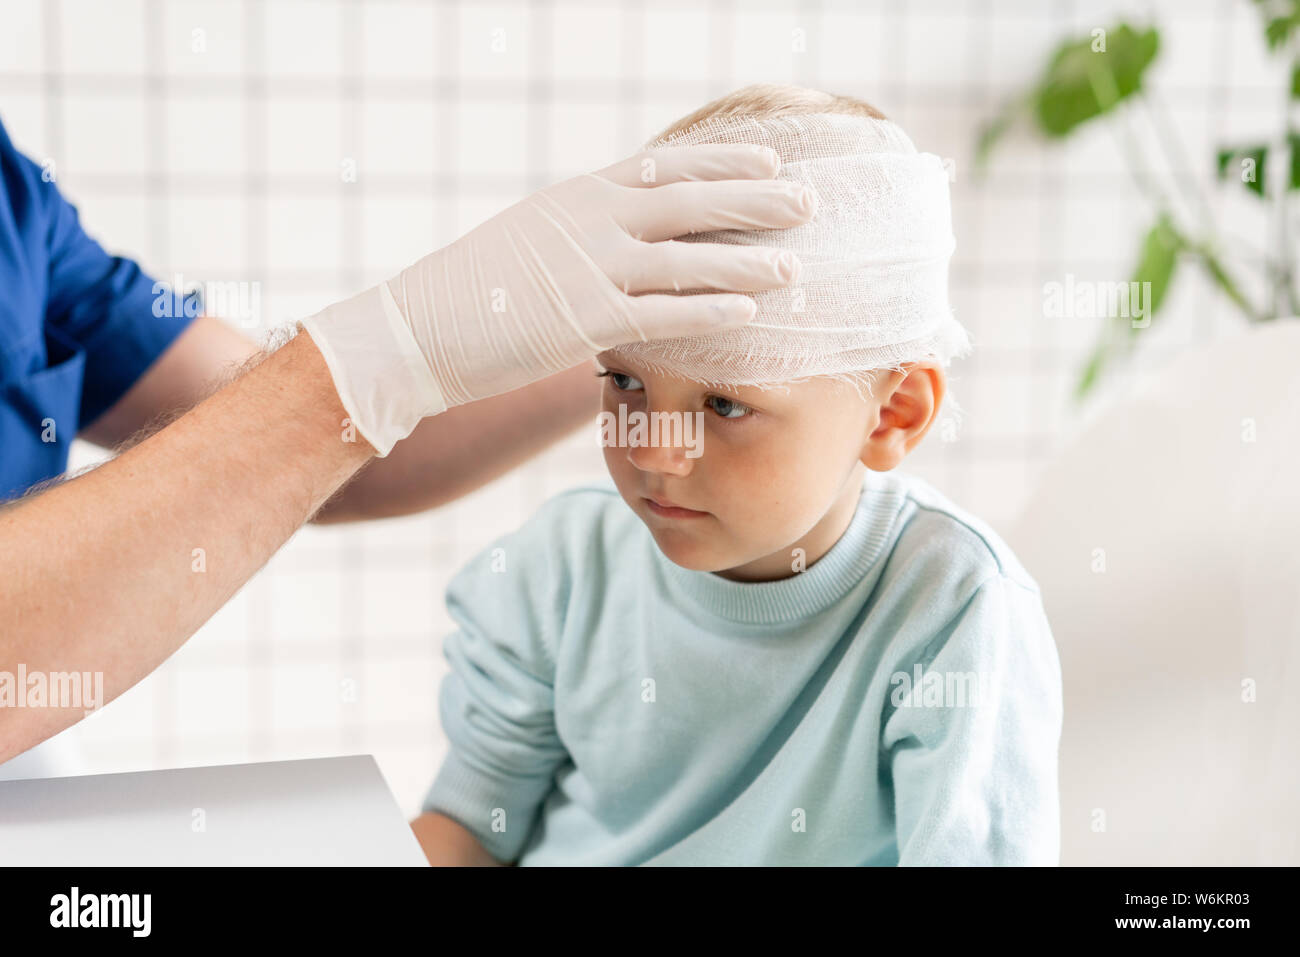 Médecin un garçon avec la tête bandée traumatisme dans la tête et un bandage élastique autour de sa tête Banque D'Images